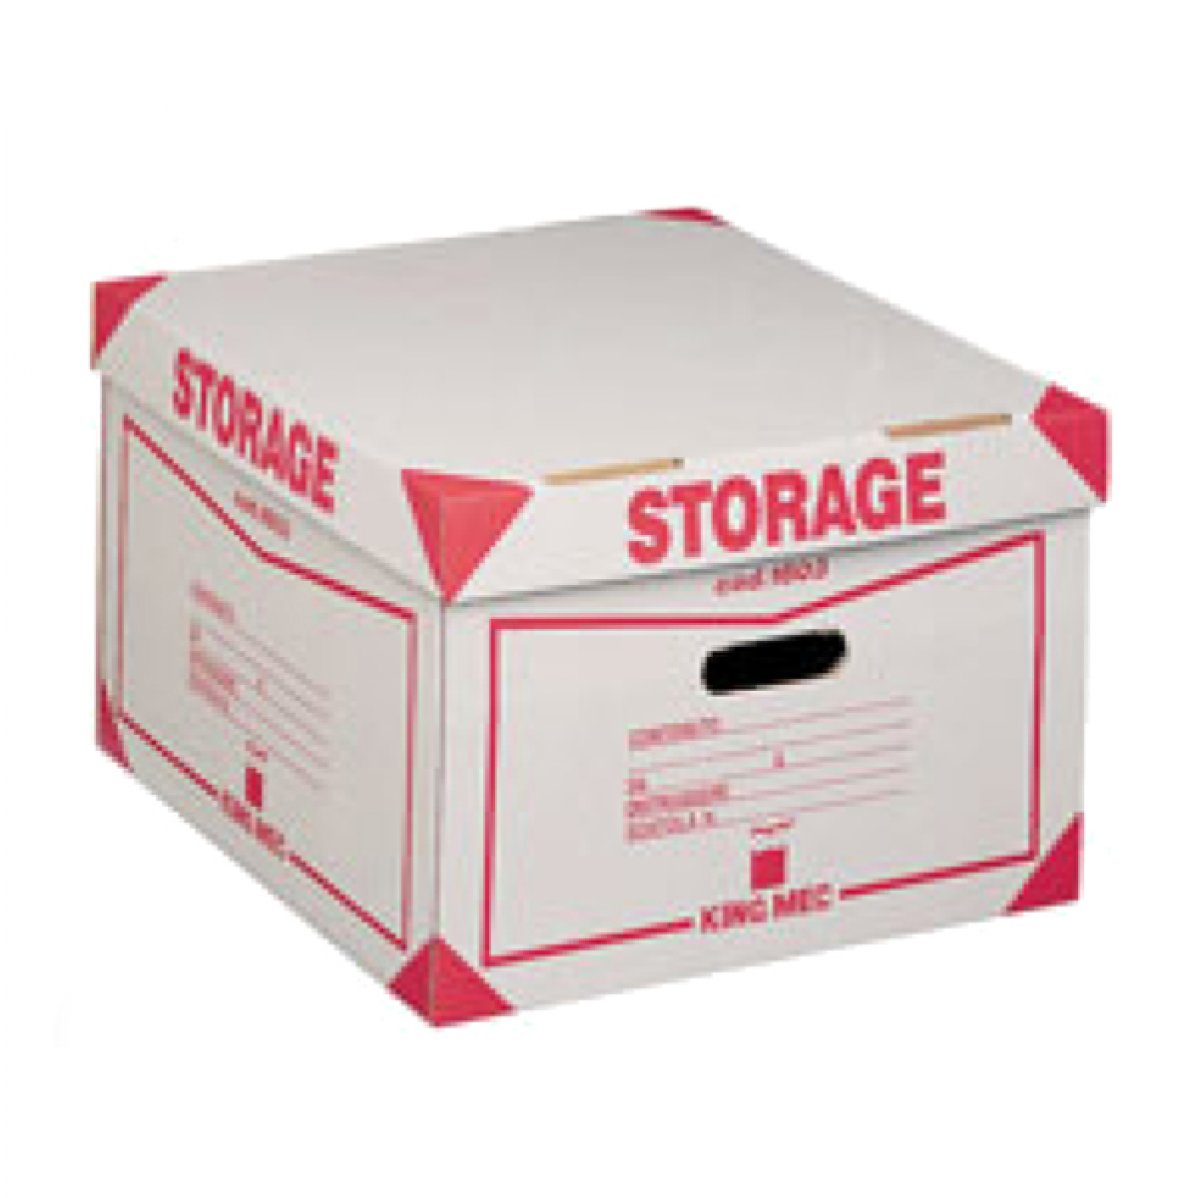 Scatola Storage - con coperchio - 38,5x26,4x39,7 cm - bianco e rosso - 1603 